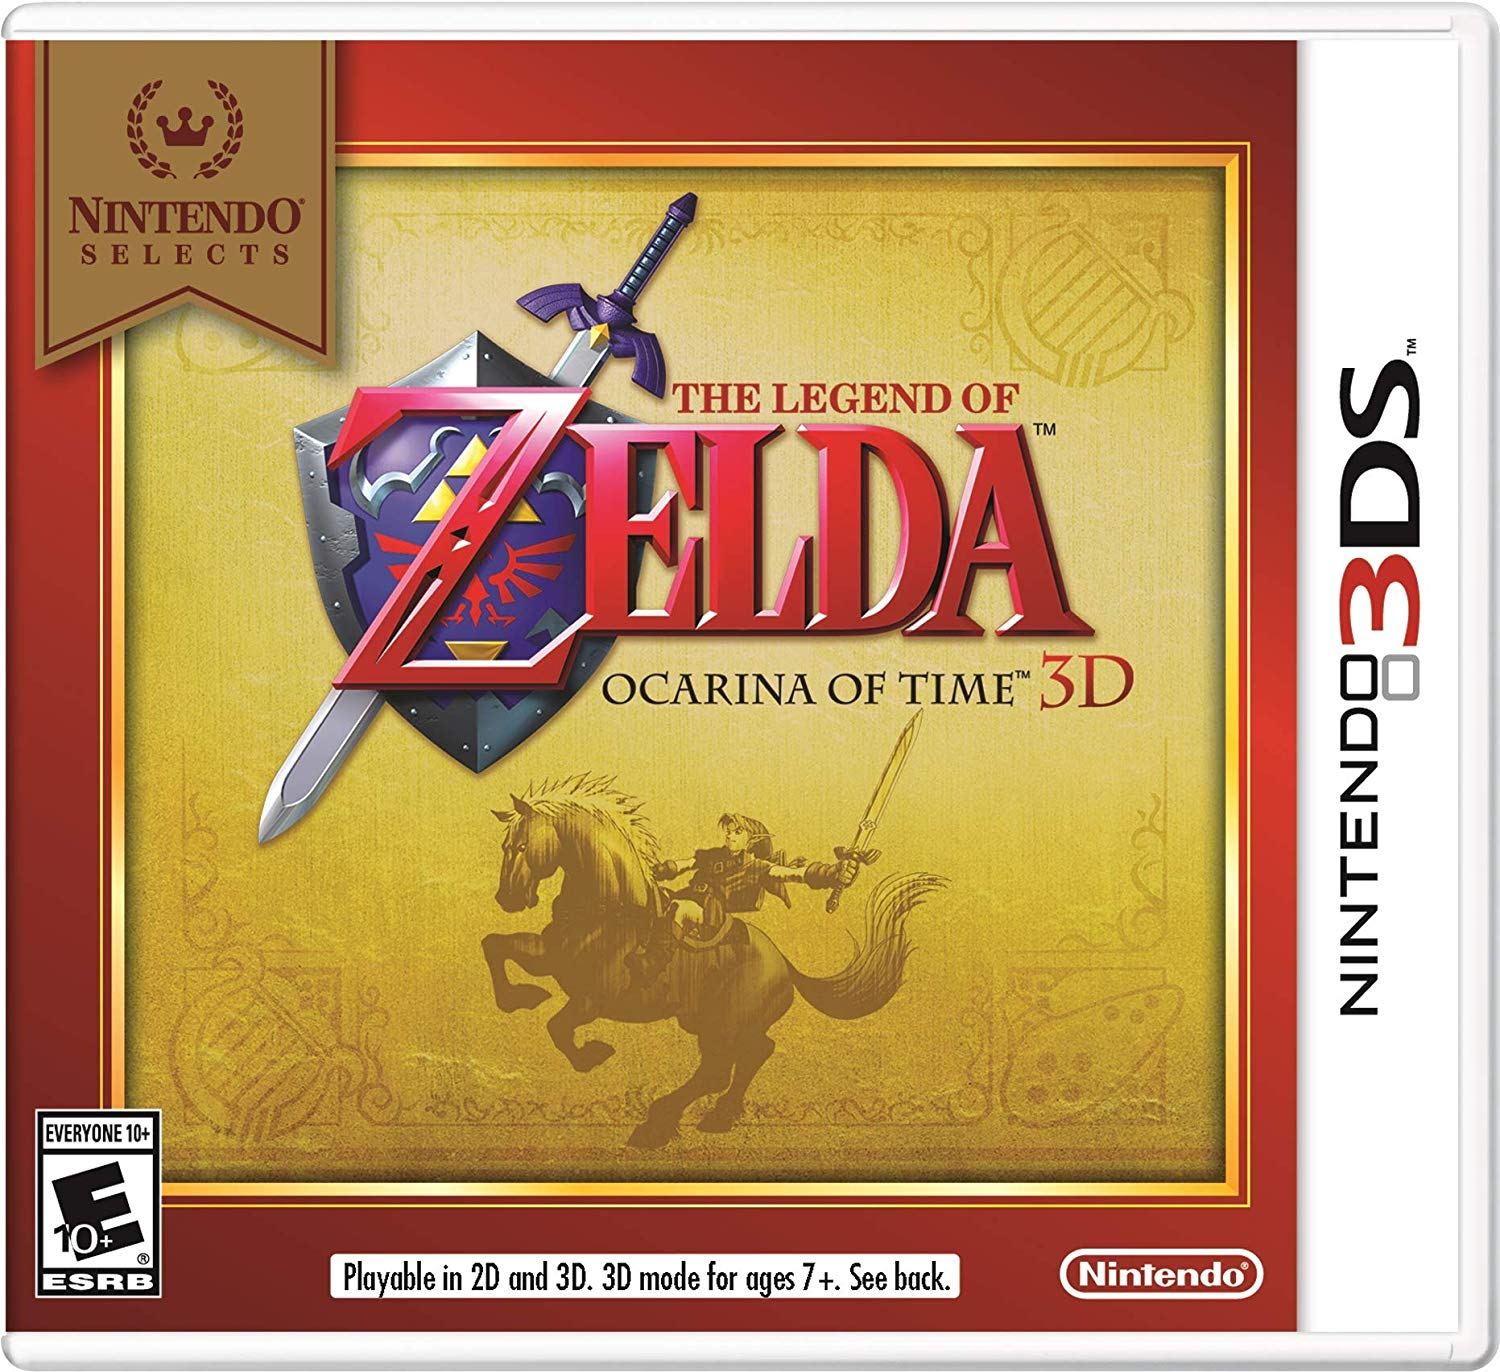 Nintendo 3DS - The Legend of Zelda: Ocarina of Time 3D Remake Trailer 